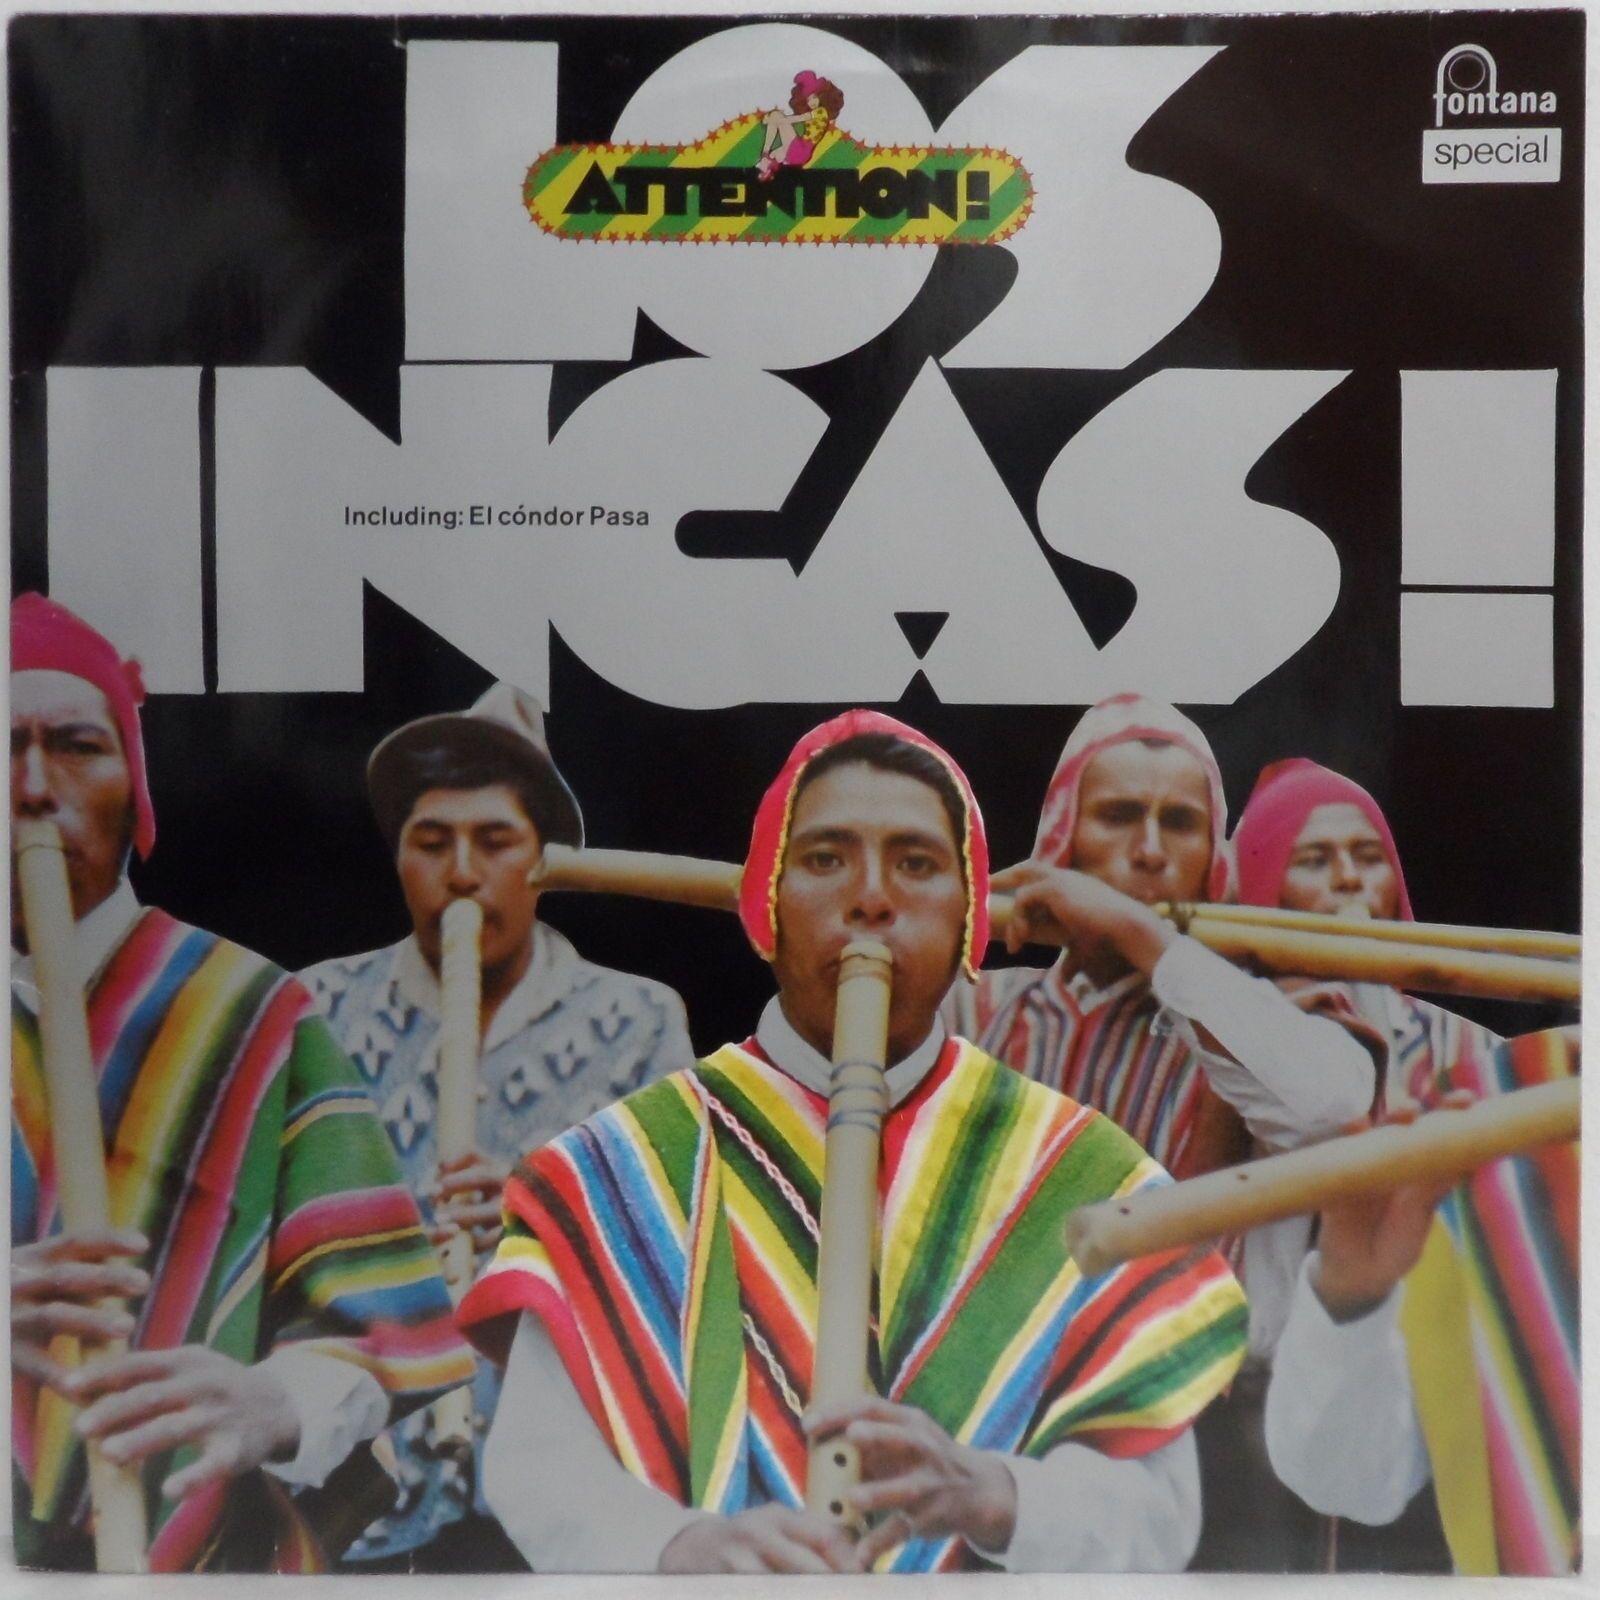 Los Incas – Attention! Los Incas! LP Including El Condor Pasa Latin America folk